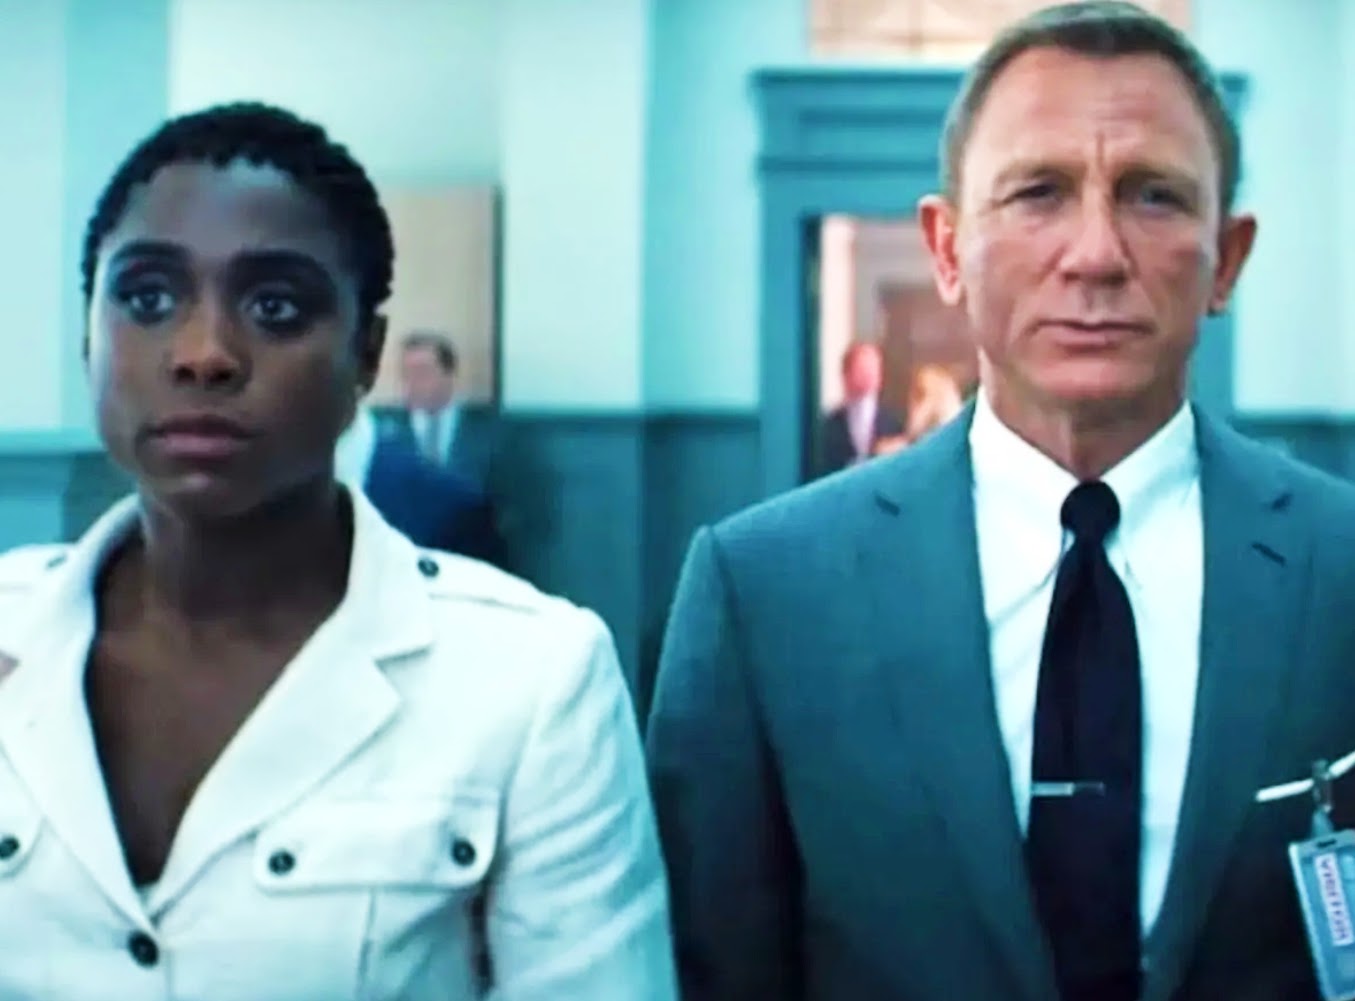 Lashana Lynch, 007 No Time to Die, grew up loving Daniel Craig's turn as James Bond